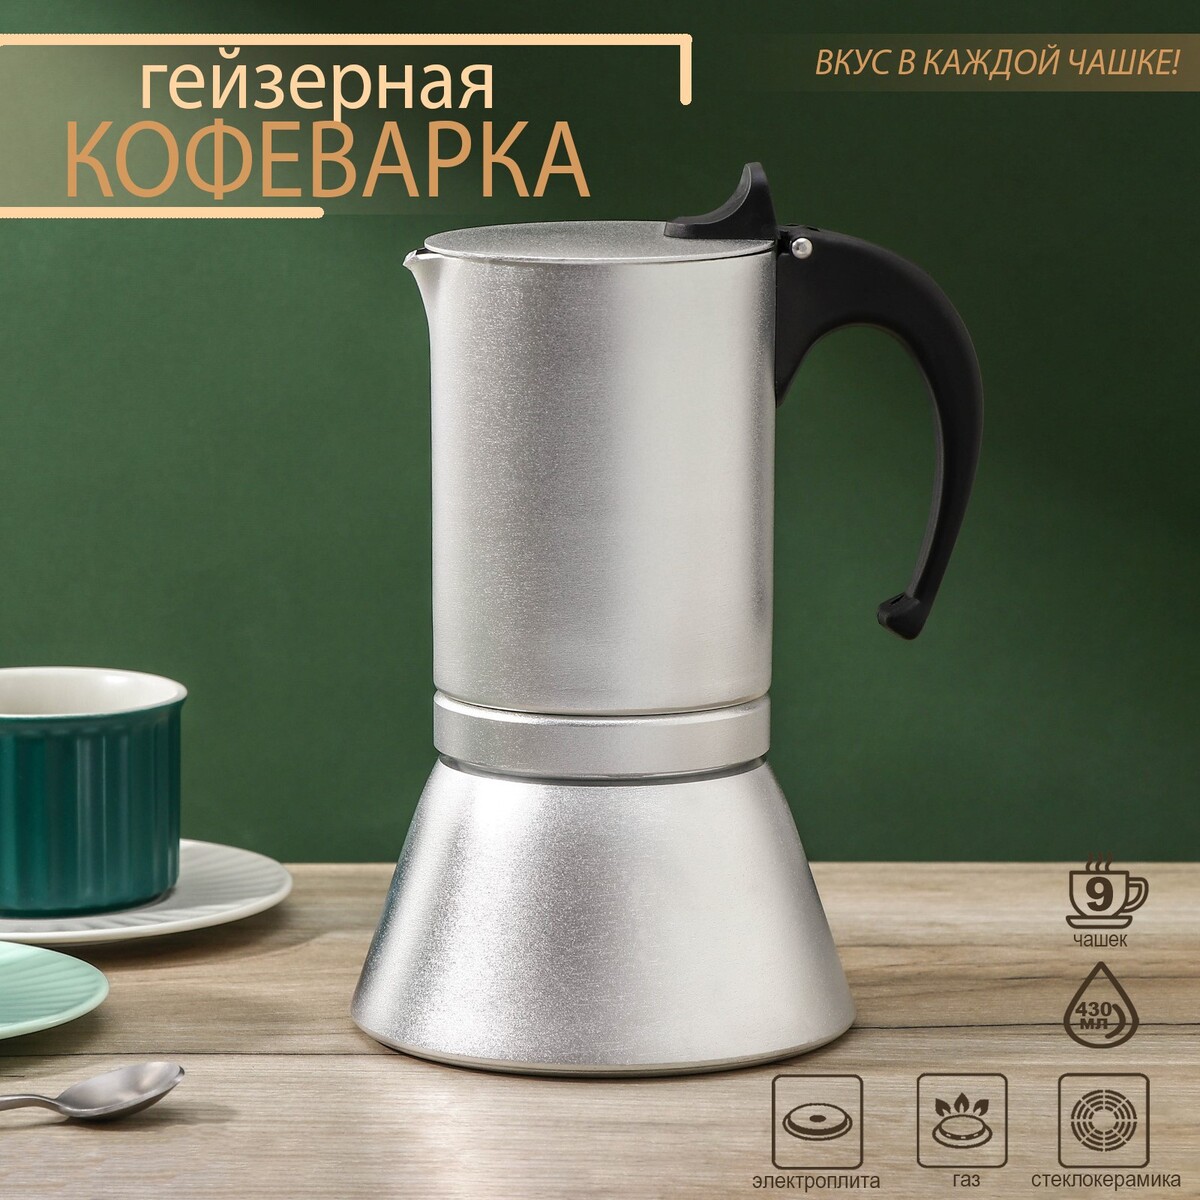 Кофеварка гейзерная magistro salem, на 9 чашек, 430 мл, индукция кофеварка гейзерная 300 мл vinzer latte crema 6 чашек